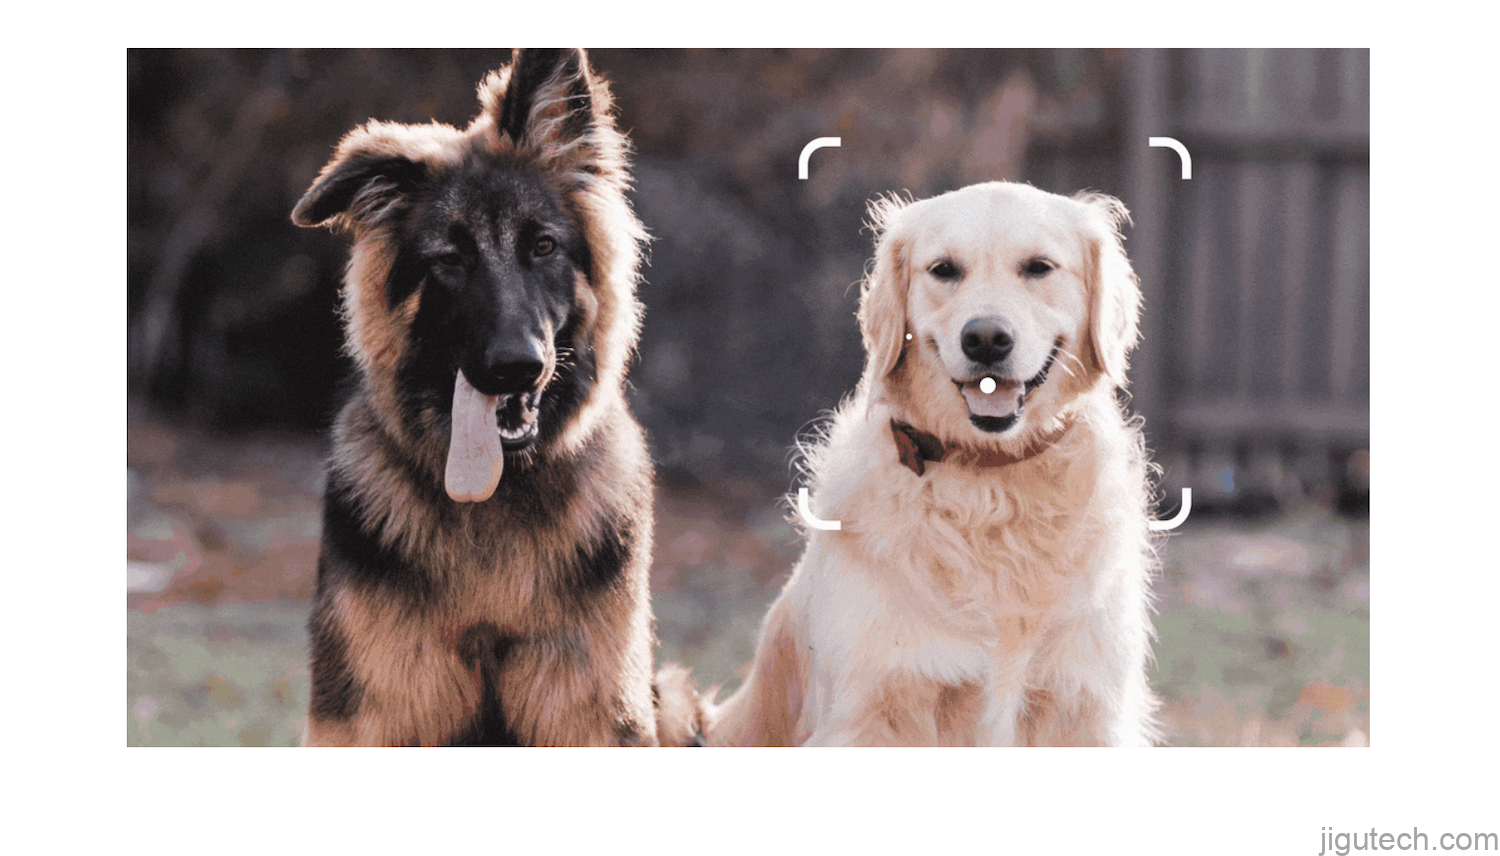 显示通过 Google 智能镜头查看两只狗的图像。